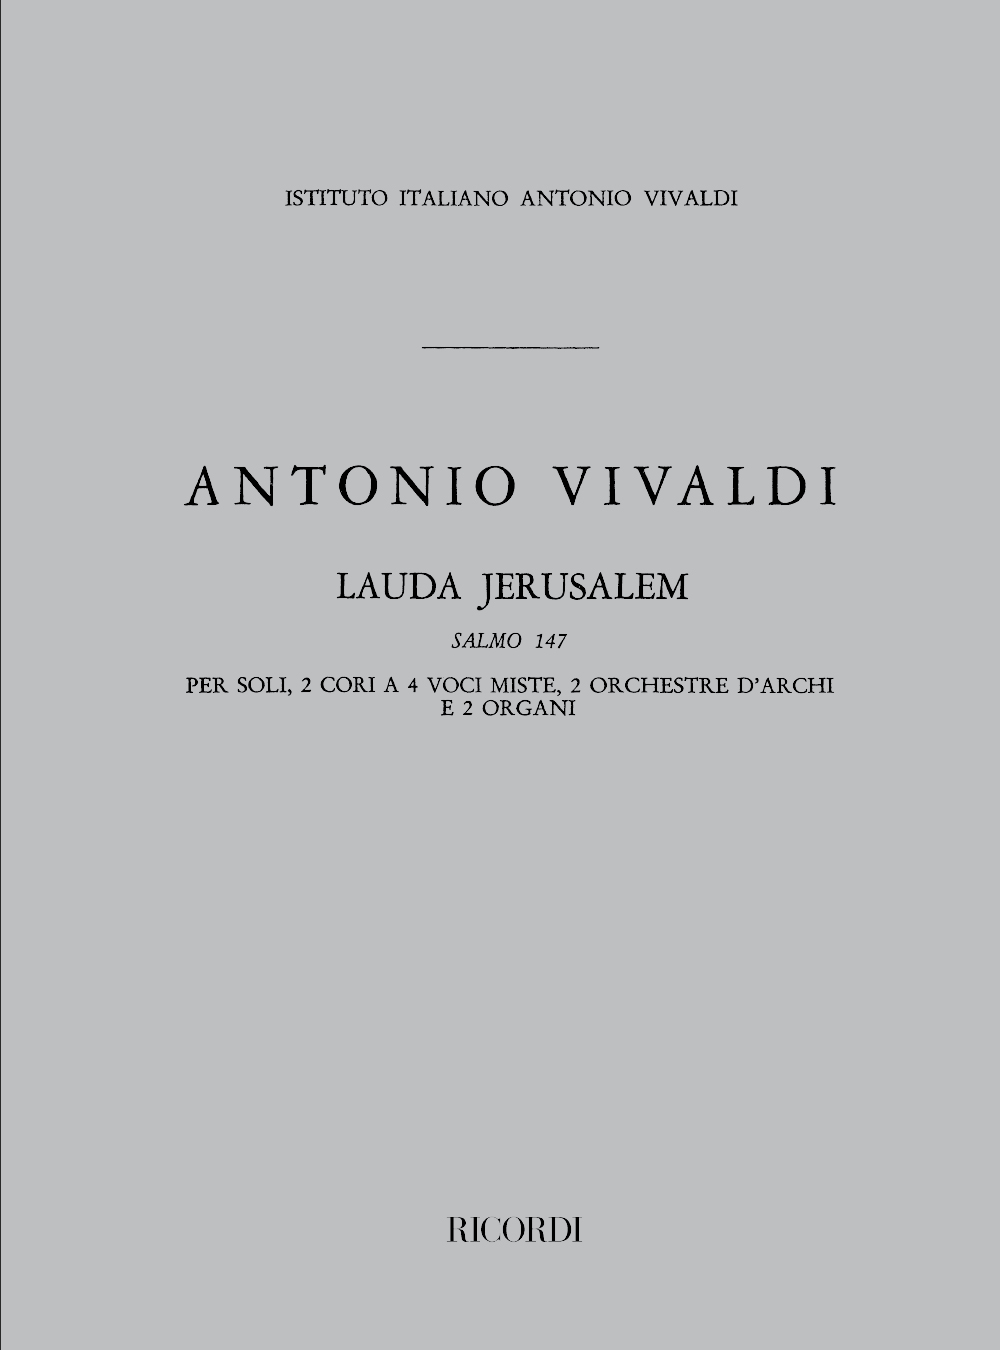 Antonio Vivaldi: Lauda Jerusalem Salmo 147 Rv 609: Mixed Choir